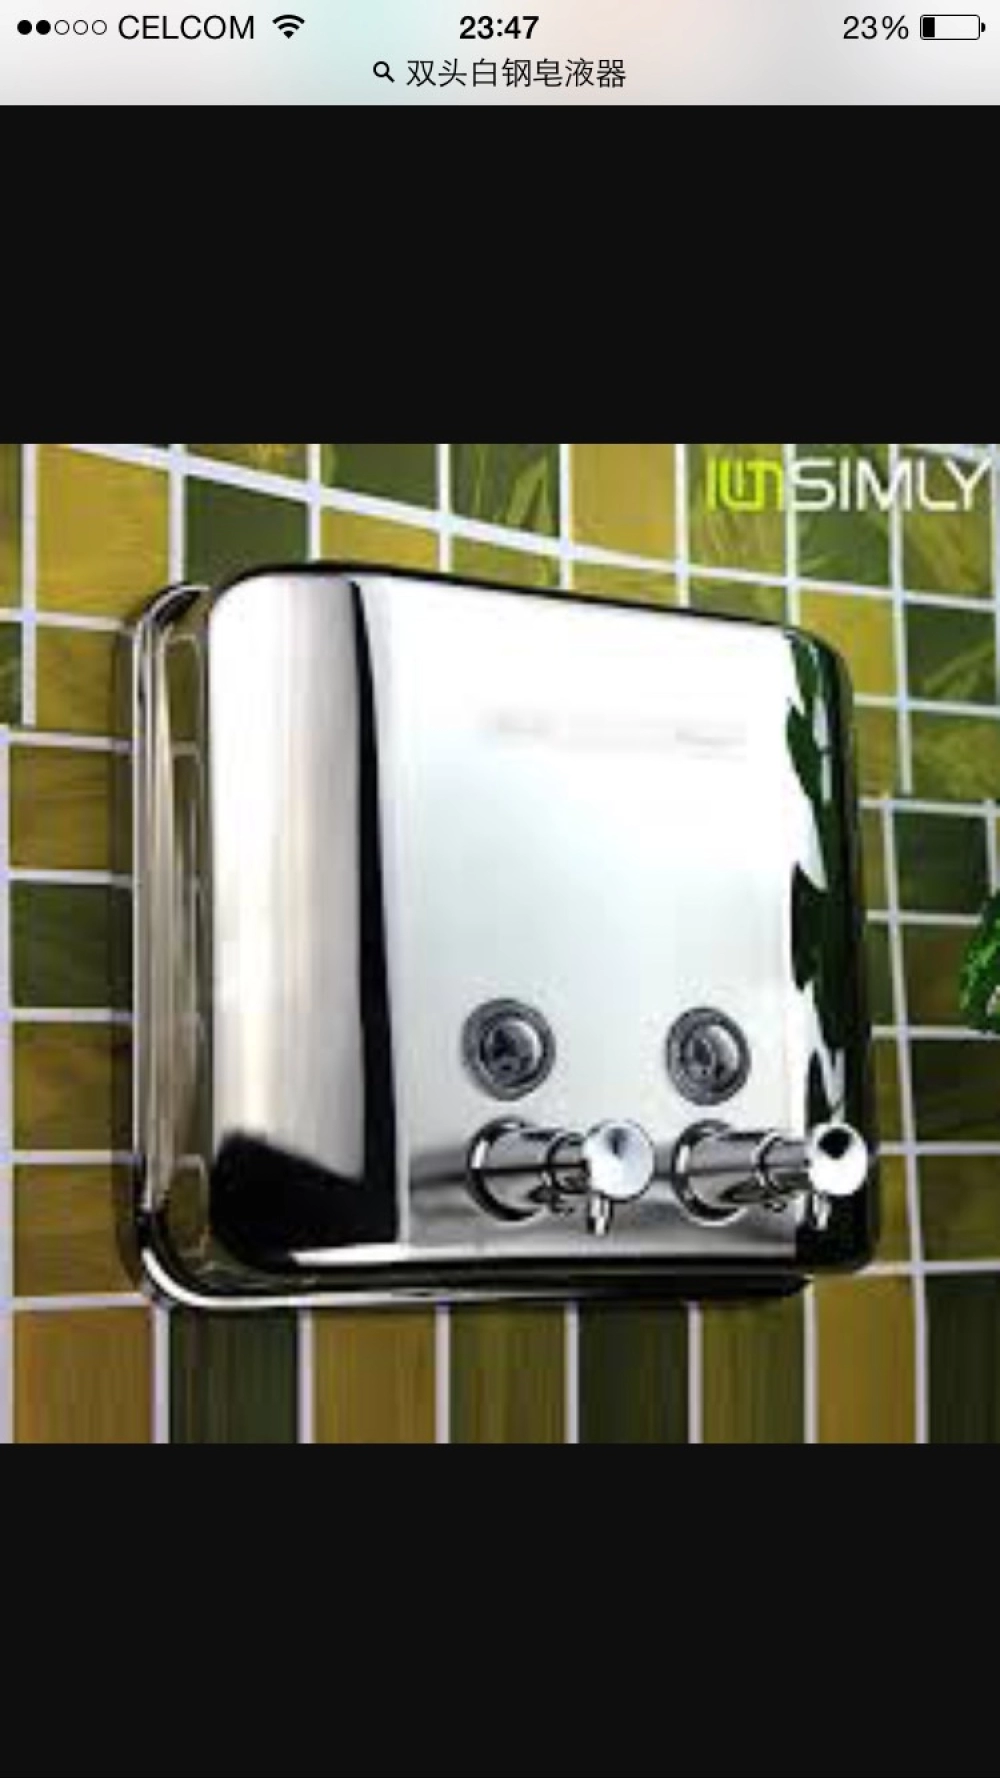 Twin Head Soap Dispenser S/S